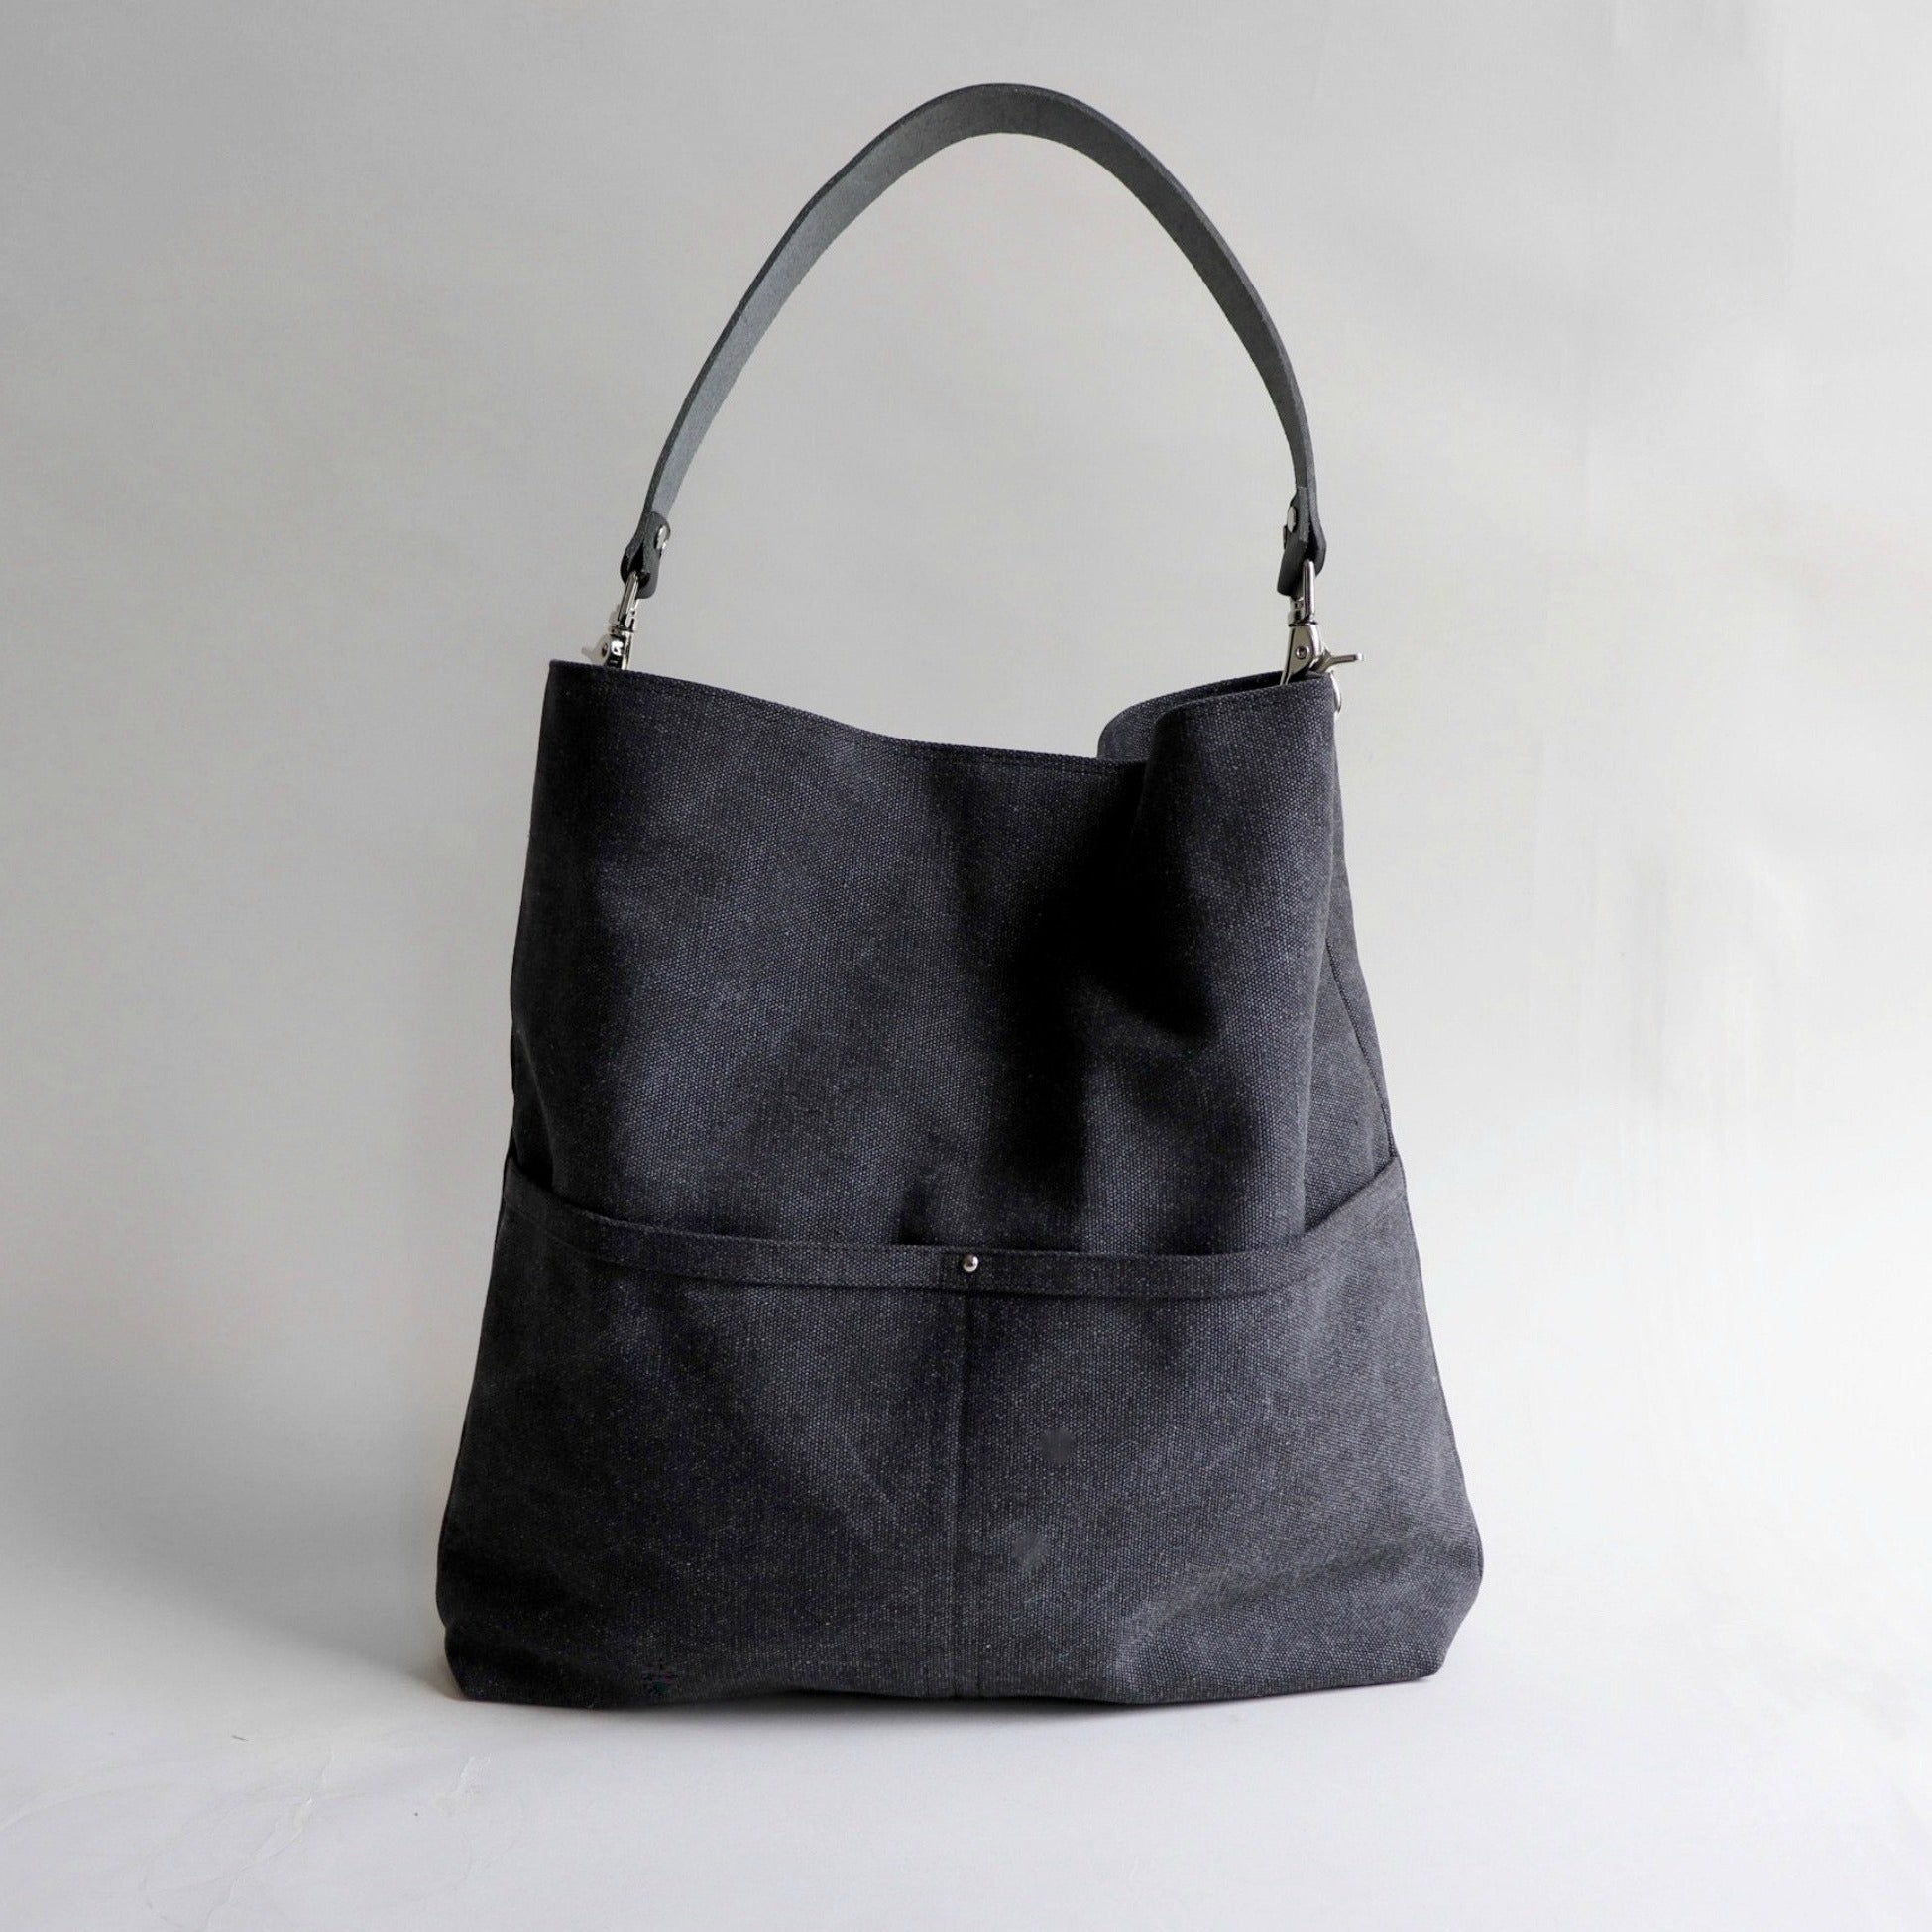 HOBO black textured leather hobo style shoulder bag purse | Hobo style, Leather  hobo, Purses and bags